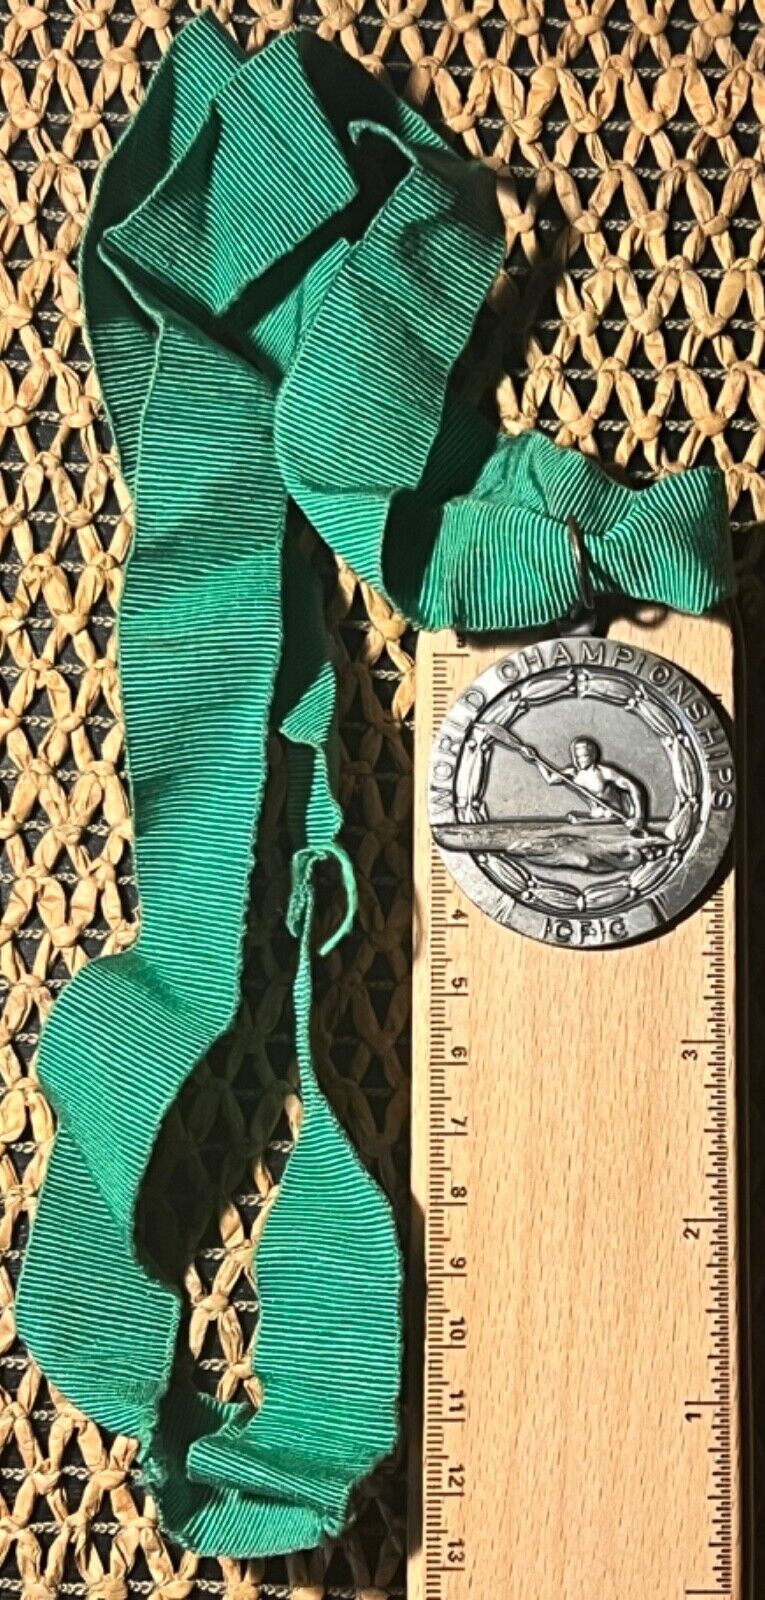 World Championships kayak medal Skopje Macedonia 1975.year